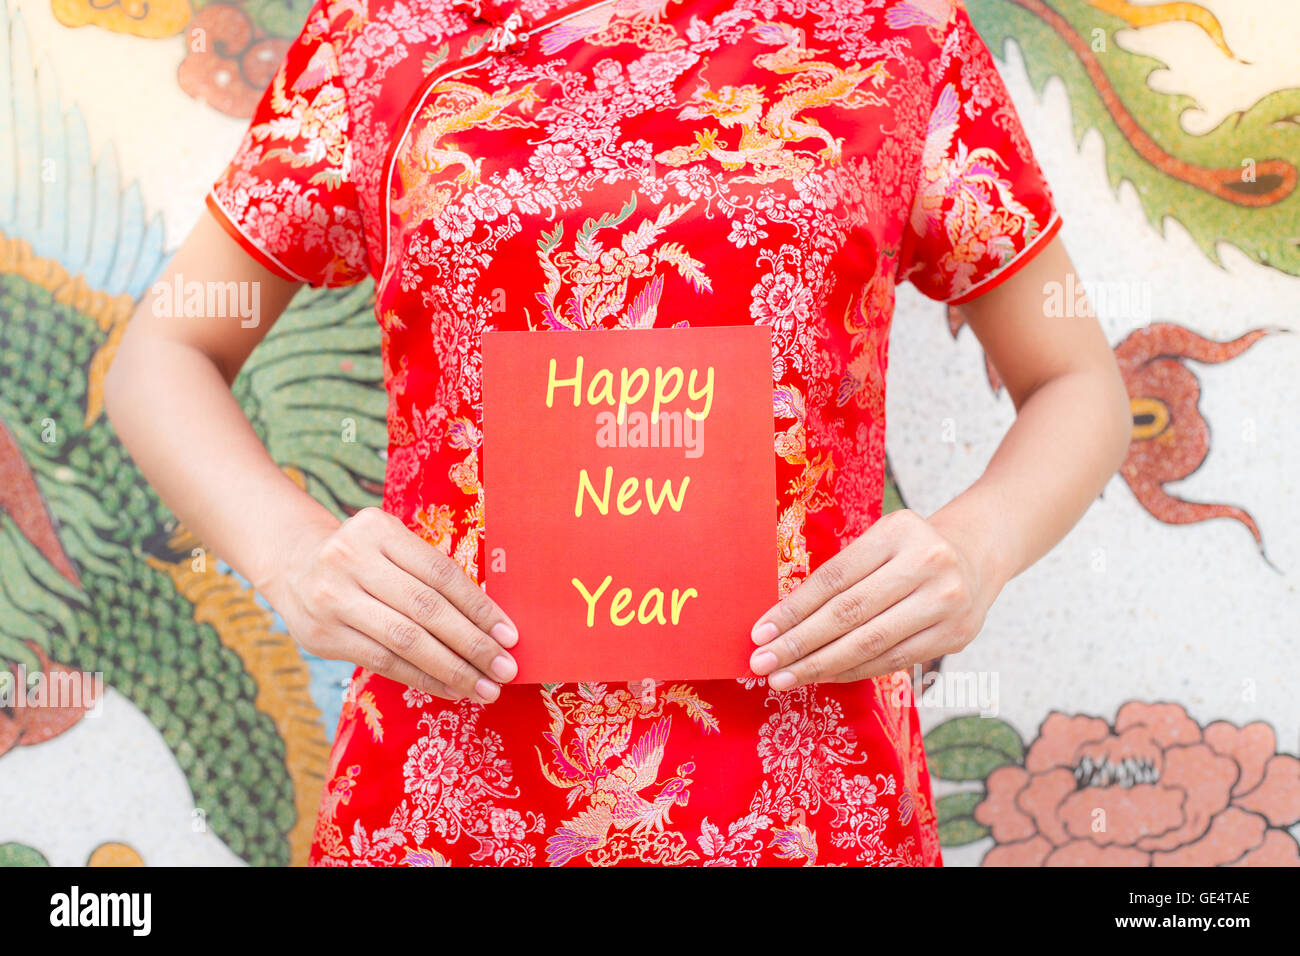 Joyeux Nouvel An Chinois Cheongsam rouge avec femme asiatique tenant un paquet rouge en vous souhaitant bonne année sur motif chinois traditi Banque D'Images